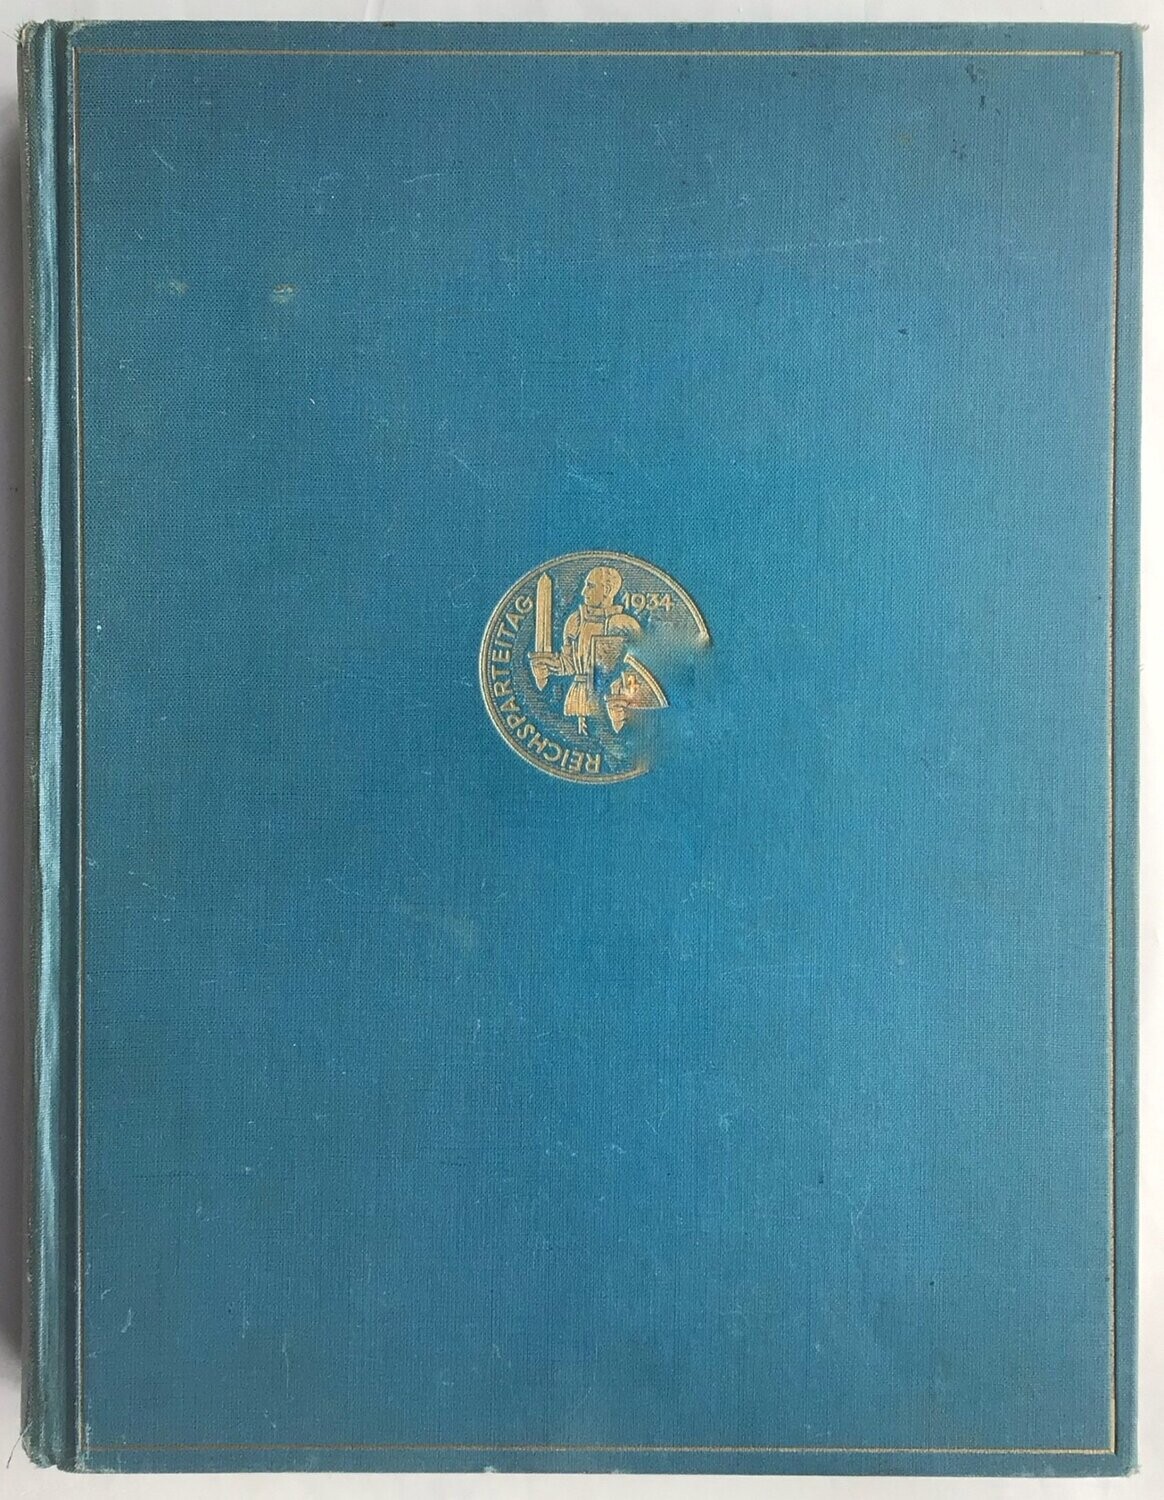 Streicher: Reichstagung in Nürnberg 1934. Ganzleinenausgabe aus dem Jahr 1934.